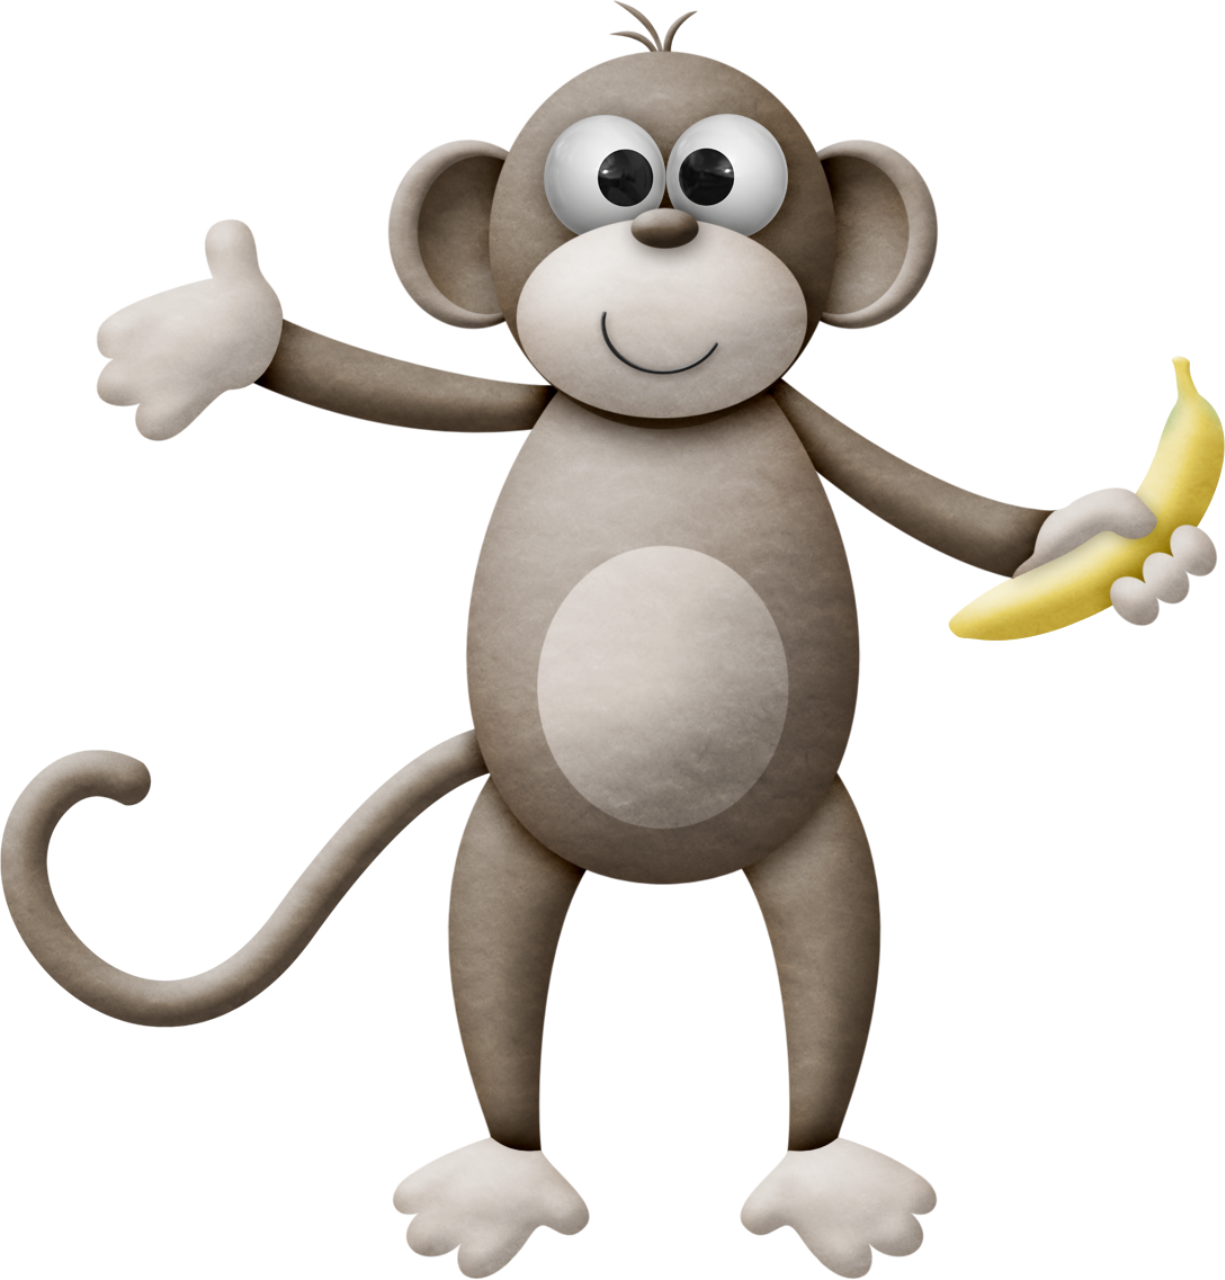 Monkey With Banana - Cartoon (1225x1280)